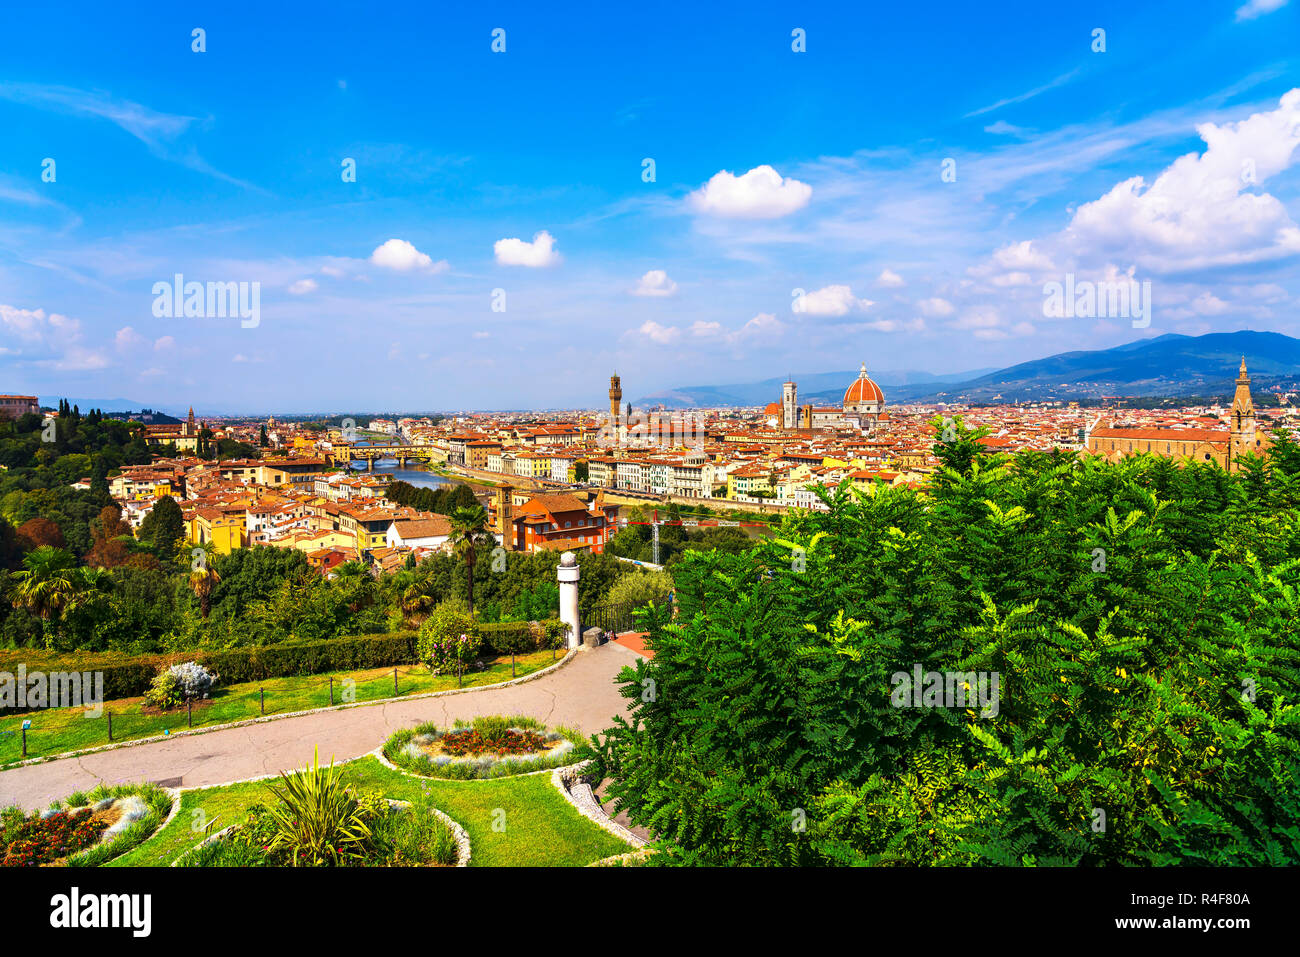 Florenz oder Firenze Stadtbild. Panorama Blick von Michelangelo Park Platz. Die Brücke Ponte Vecchio, dem Palazzo Vecchio und den Dom. Toskana, Italien Stockfoto